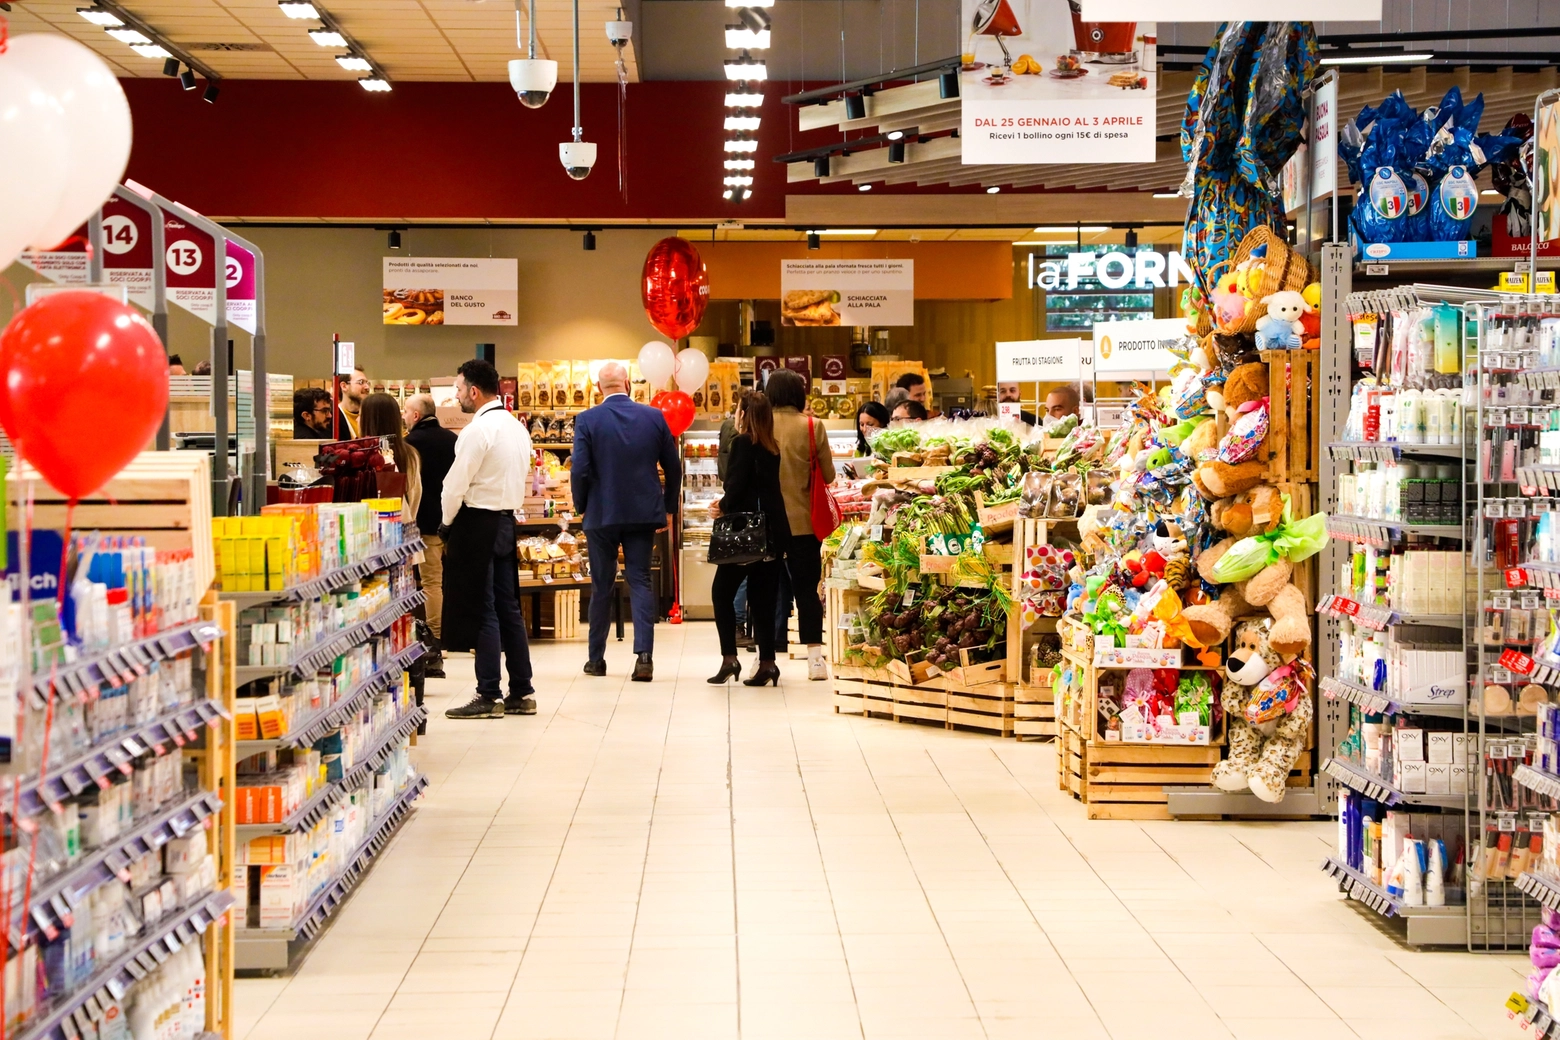 Serrande alzate in molti supermercati per il giorno di Pasquetta (Germogli)